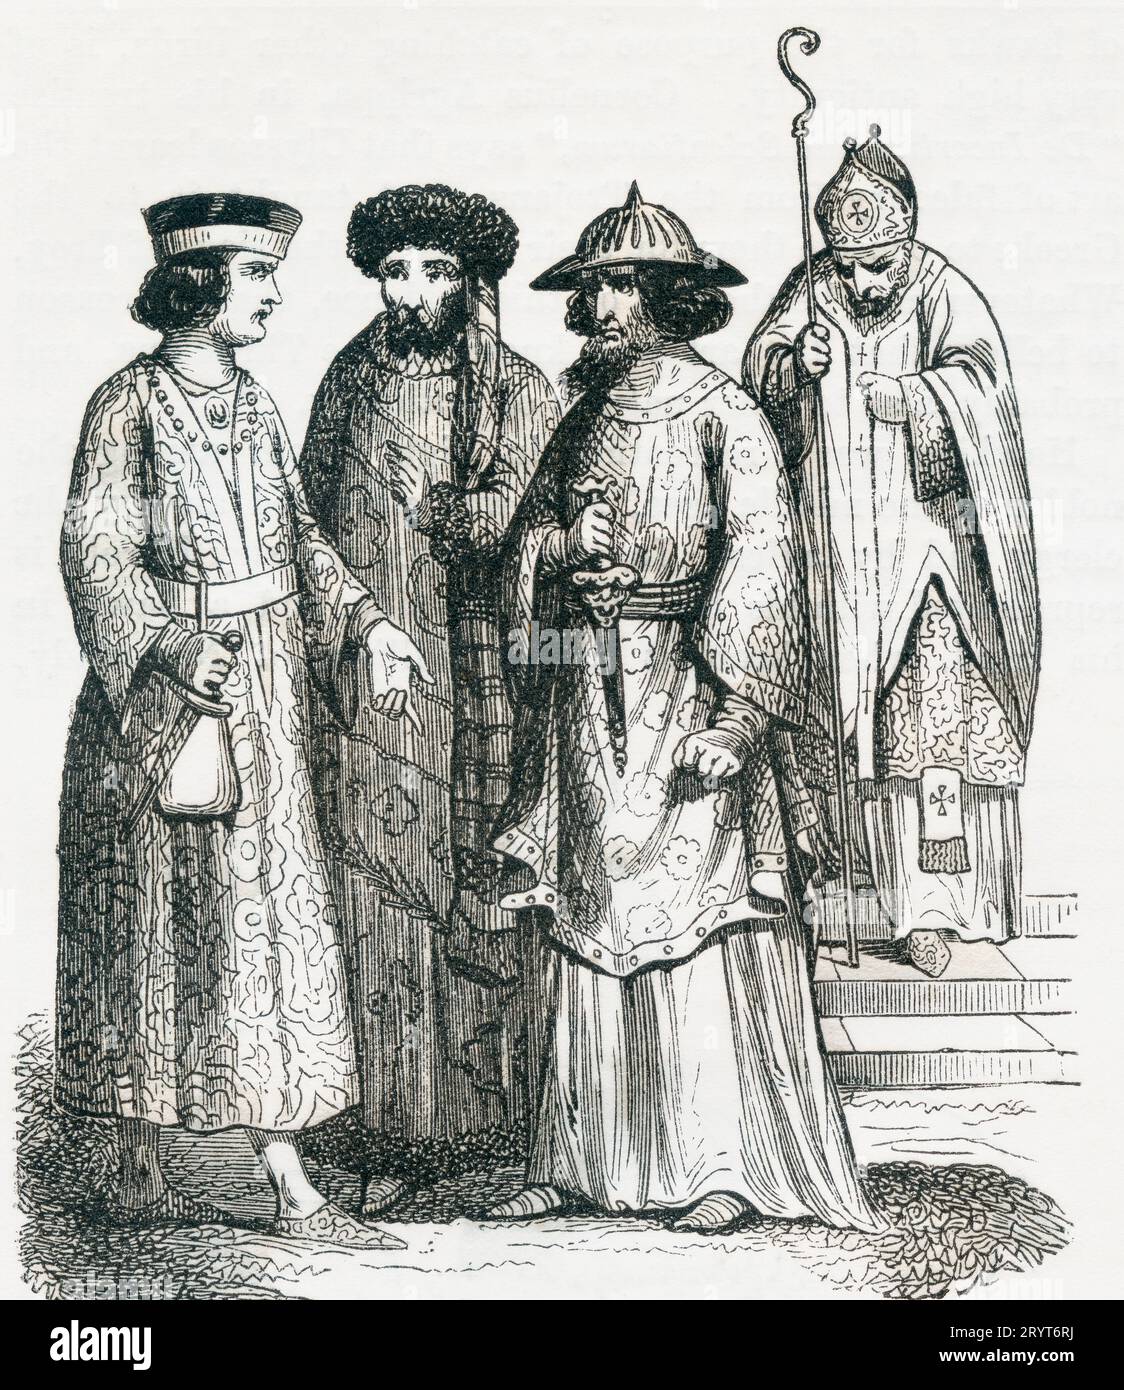 Normannische Kostüme des 11. Jahrhunderts. Bischöfe und Herren. Aus Cassell's Illustrated History of England, veröffentlicht 1857. Stockfoto